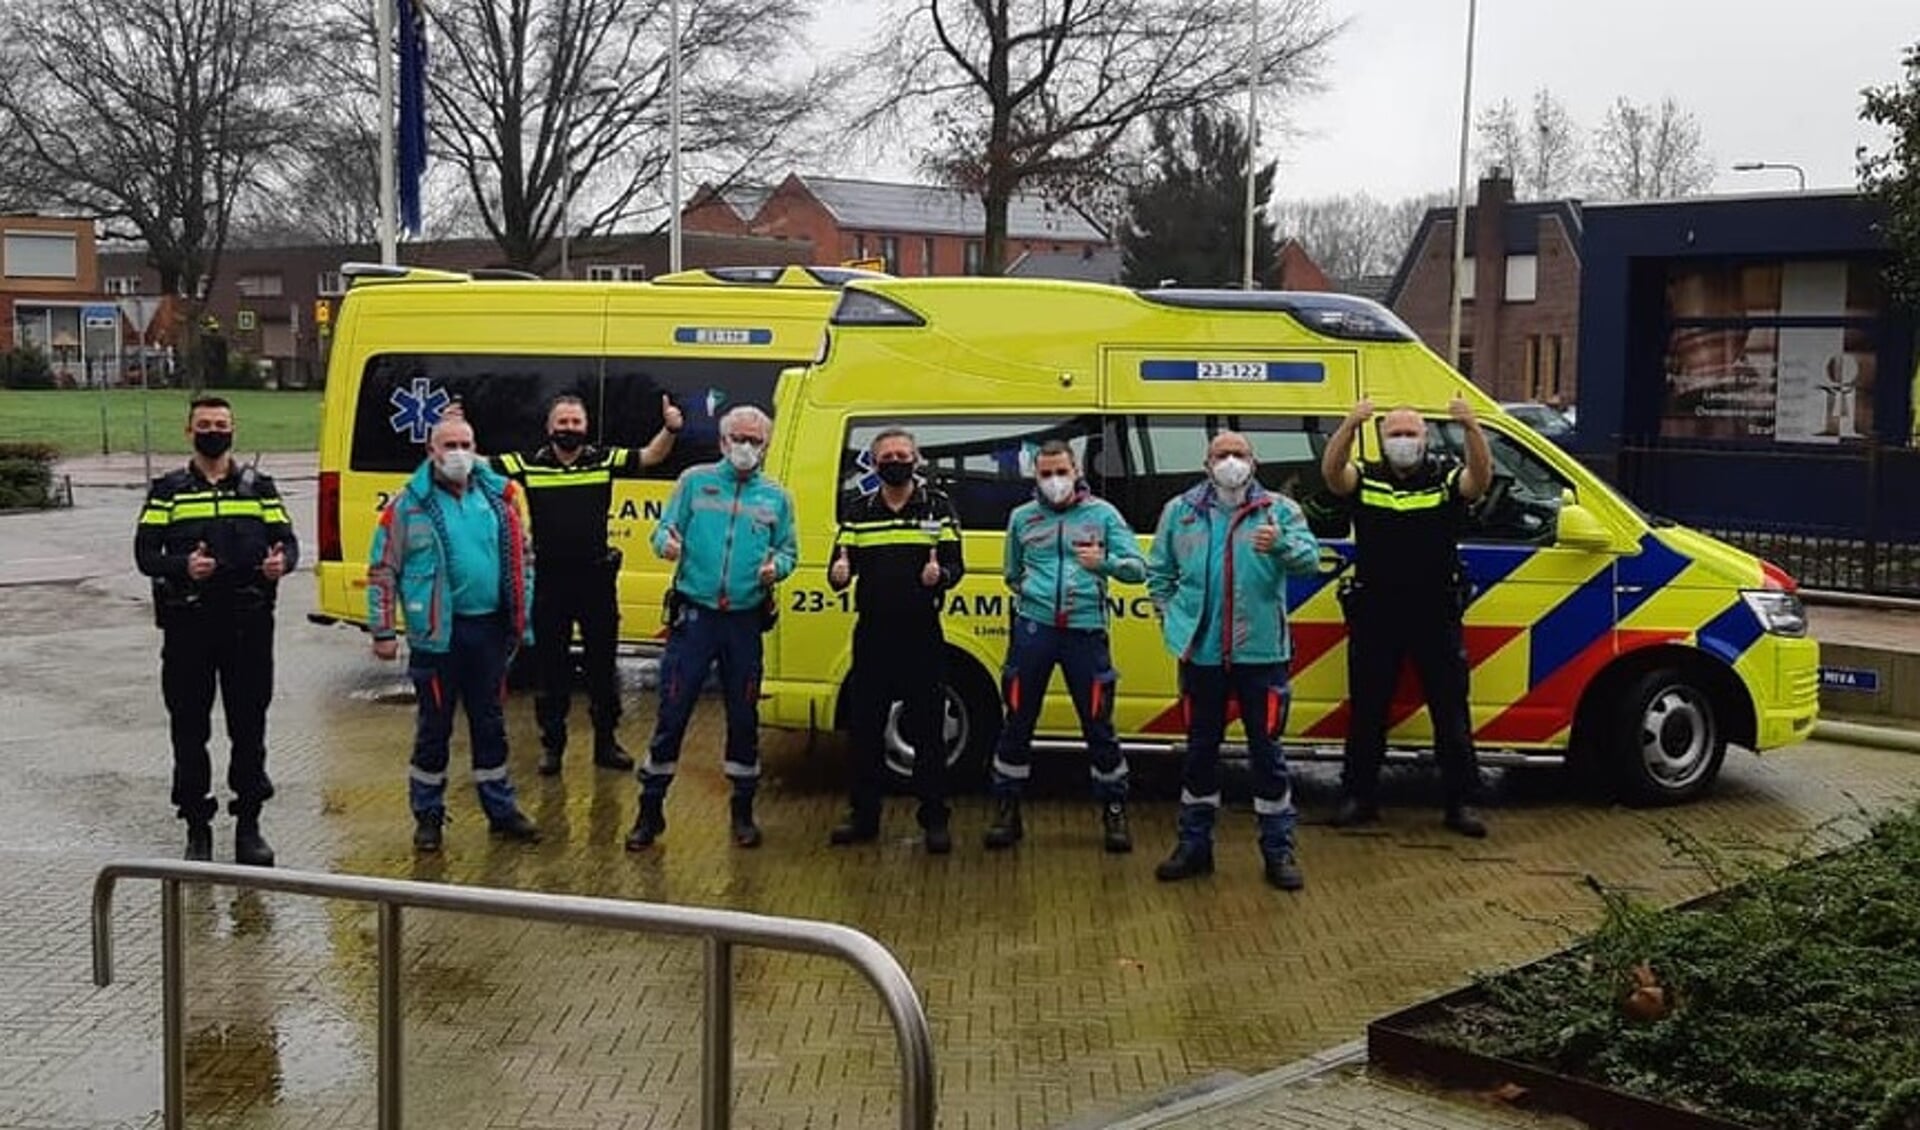 Medewerkers van de ambulance bedanken de politie voor hun steun